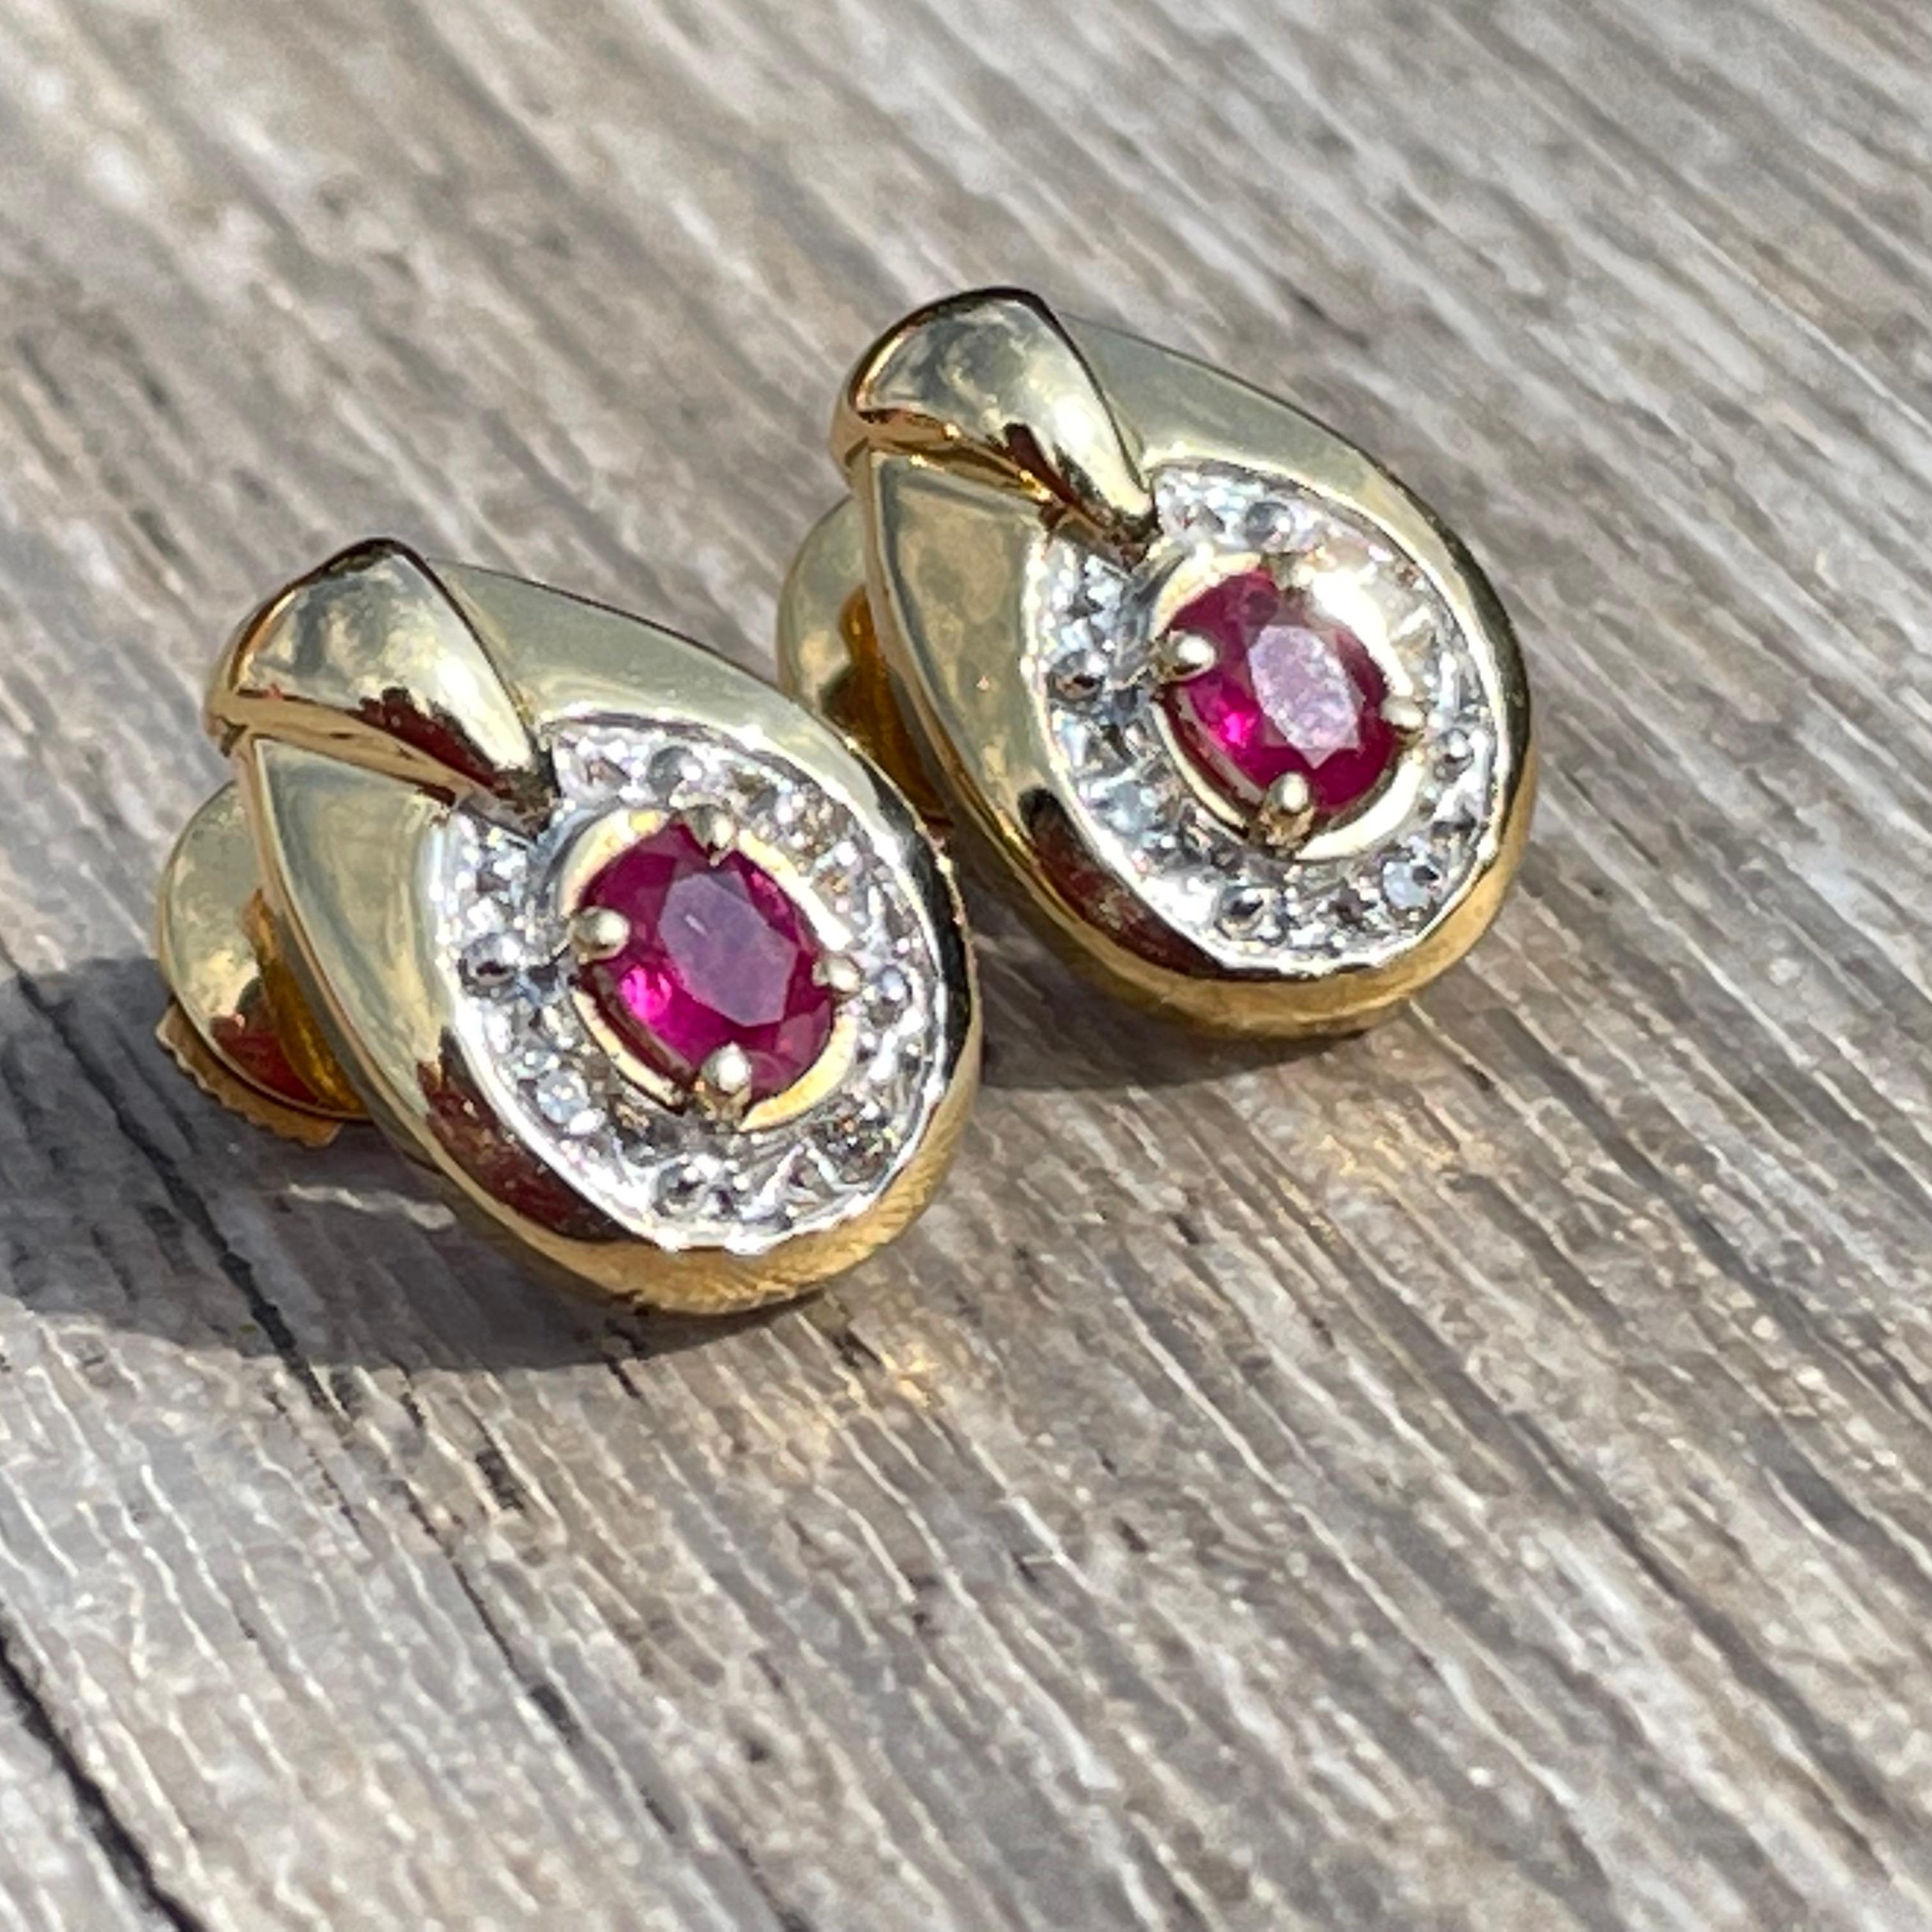 Les boucles d'oreilles rubis diamants en or 18 carats sont un choix élégant et intemporel pour compléter votre look. Fabriquées avec soin et attention aux détails, ces boucles d'oreilles sont conçues pour apporter une touche de sophistication à